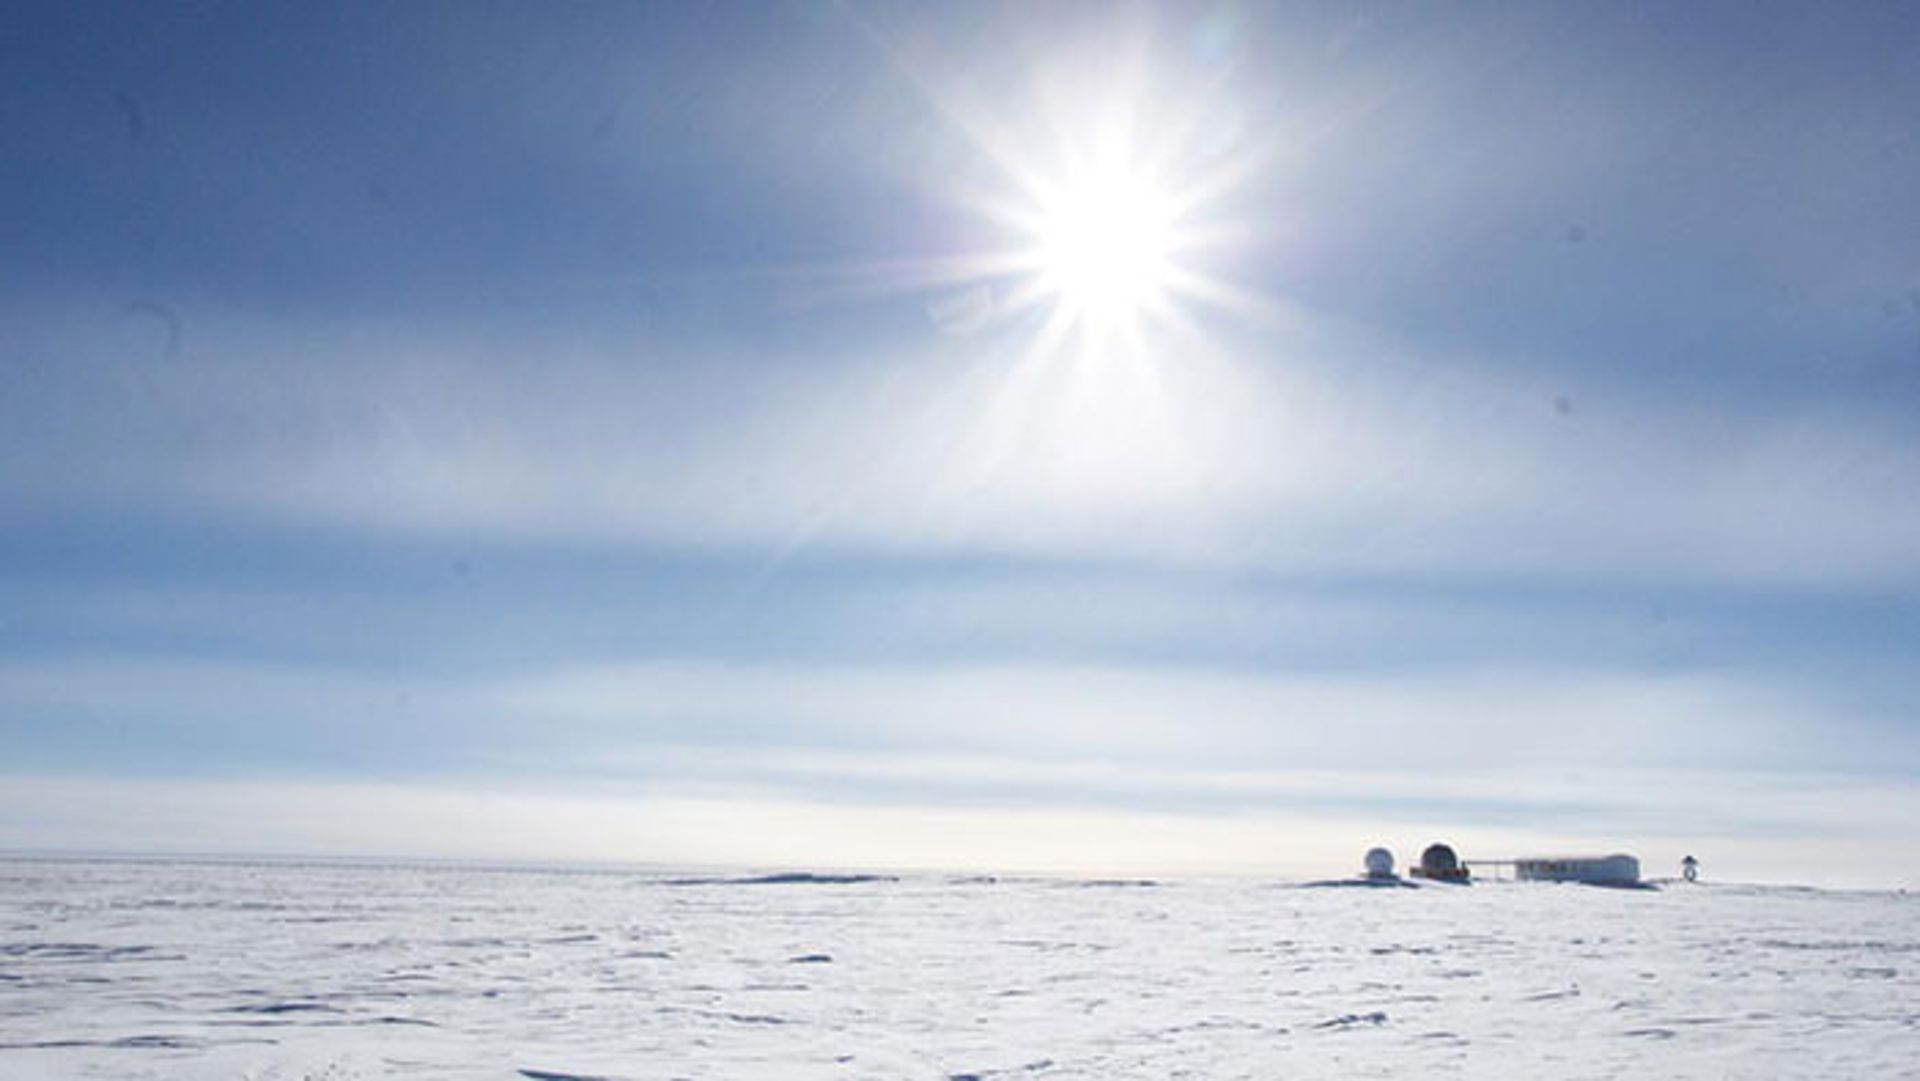 اقامت در قطب جنوب